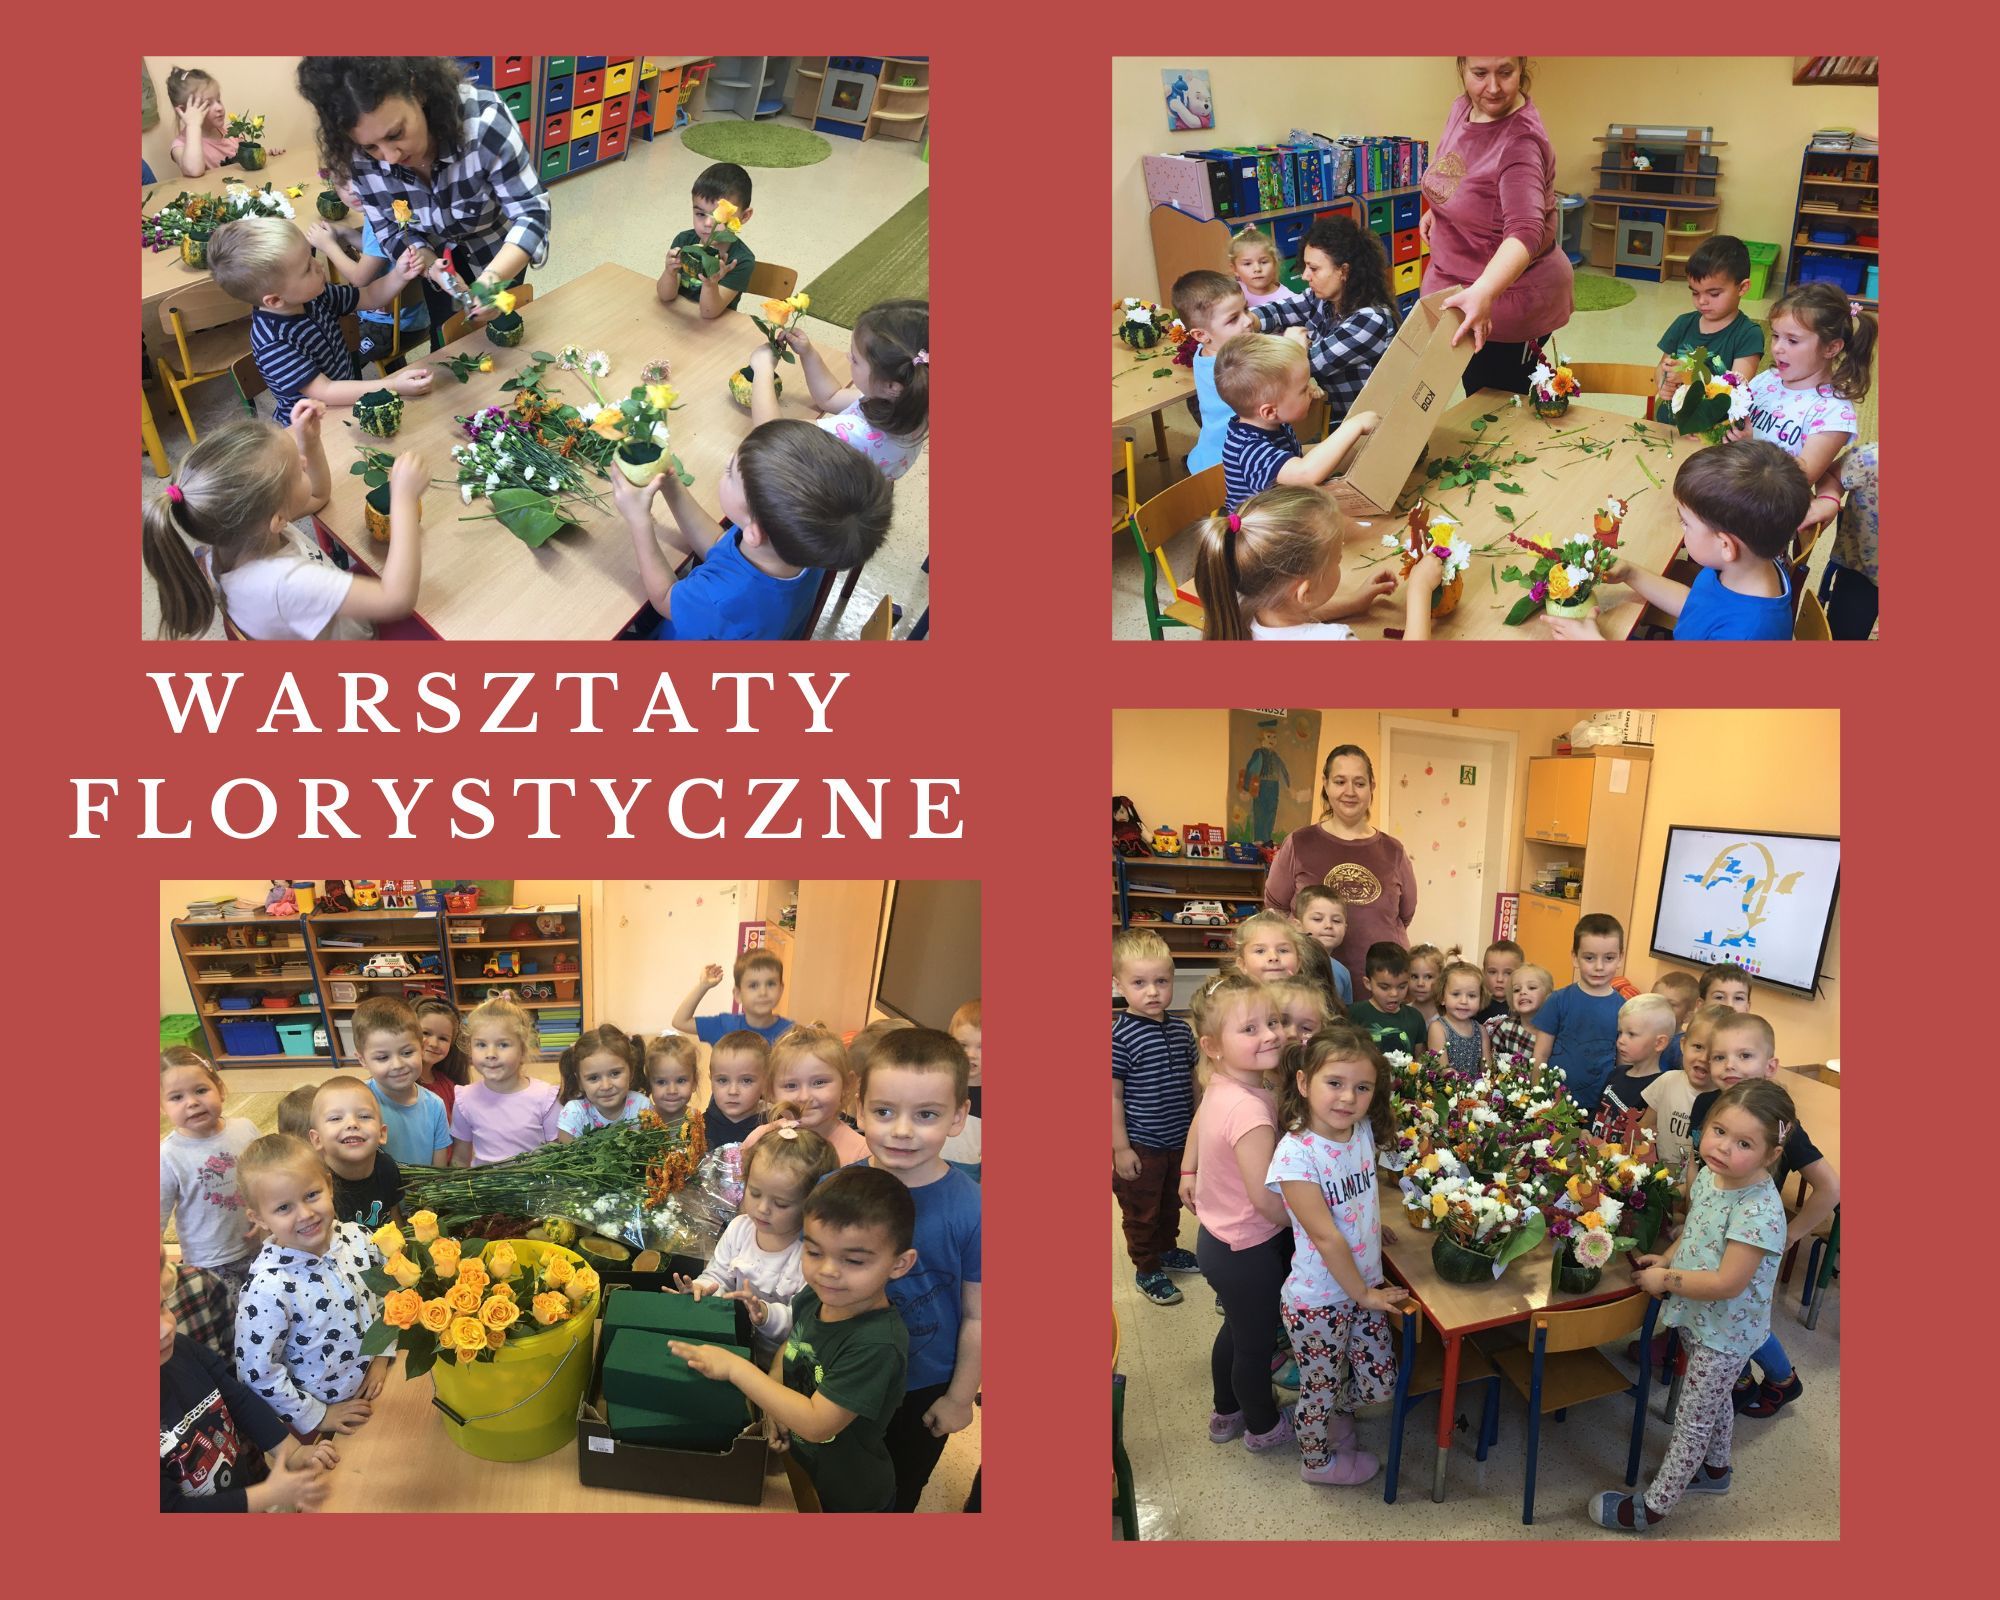 kolaż zdjęć przedszkolaki układają bukiety kwiatów zamocowane w dyniach pod opieką wychowawców i pani florystki